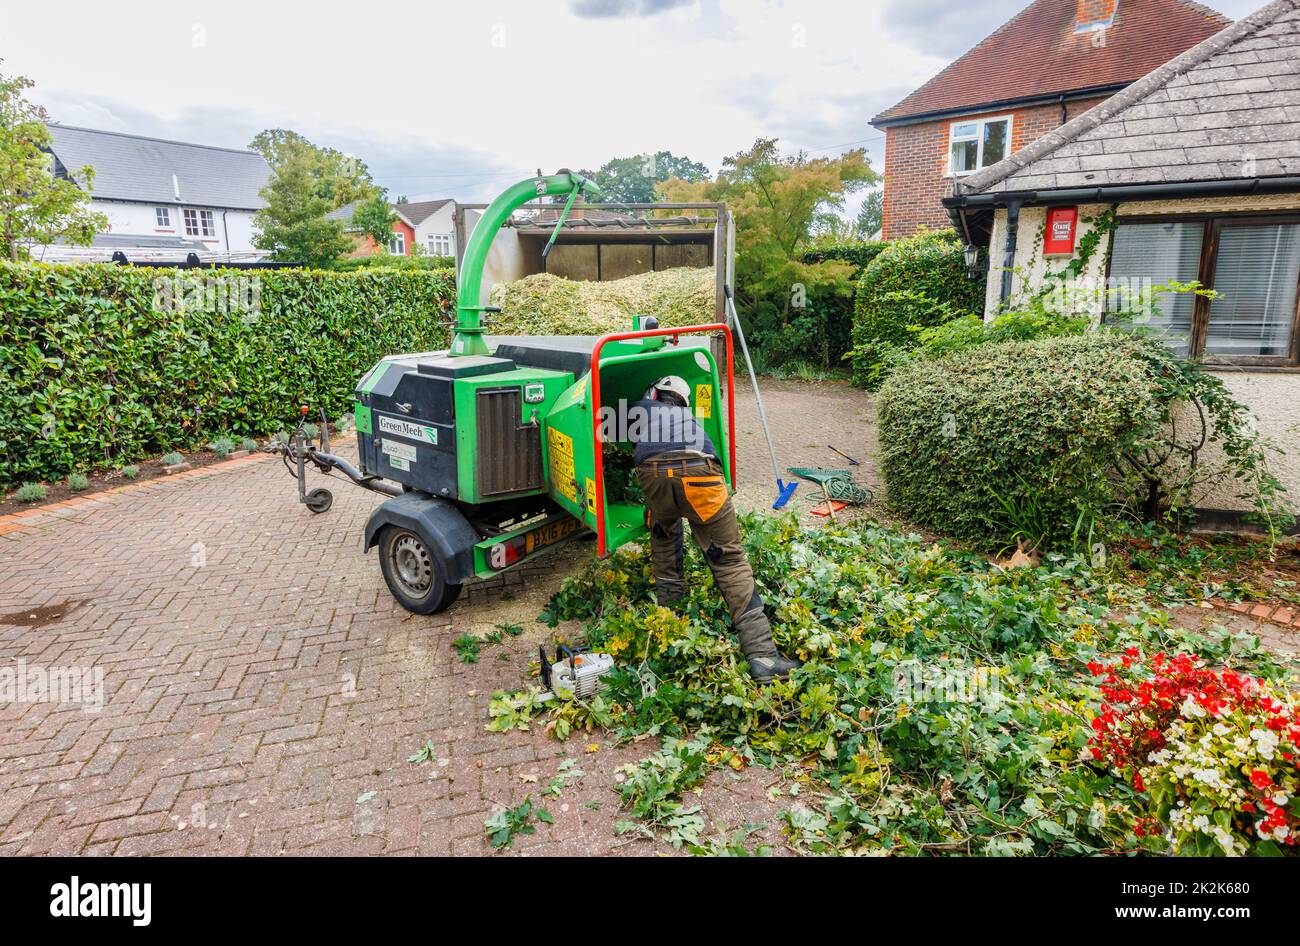 Chargement d'une hespérie commerciale GreenMech Quadchip 160 en exploitation à Surrey, dans le sud-est de l'Angleterre, élimination des garnitures qui faussent un chêne de jardin Banque D'Images